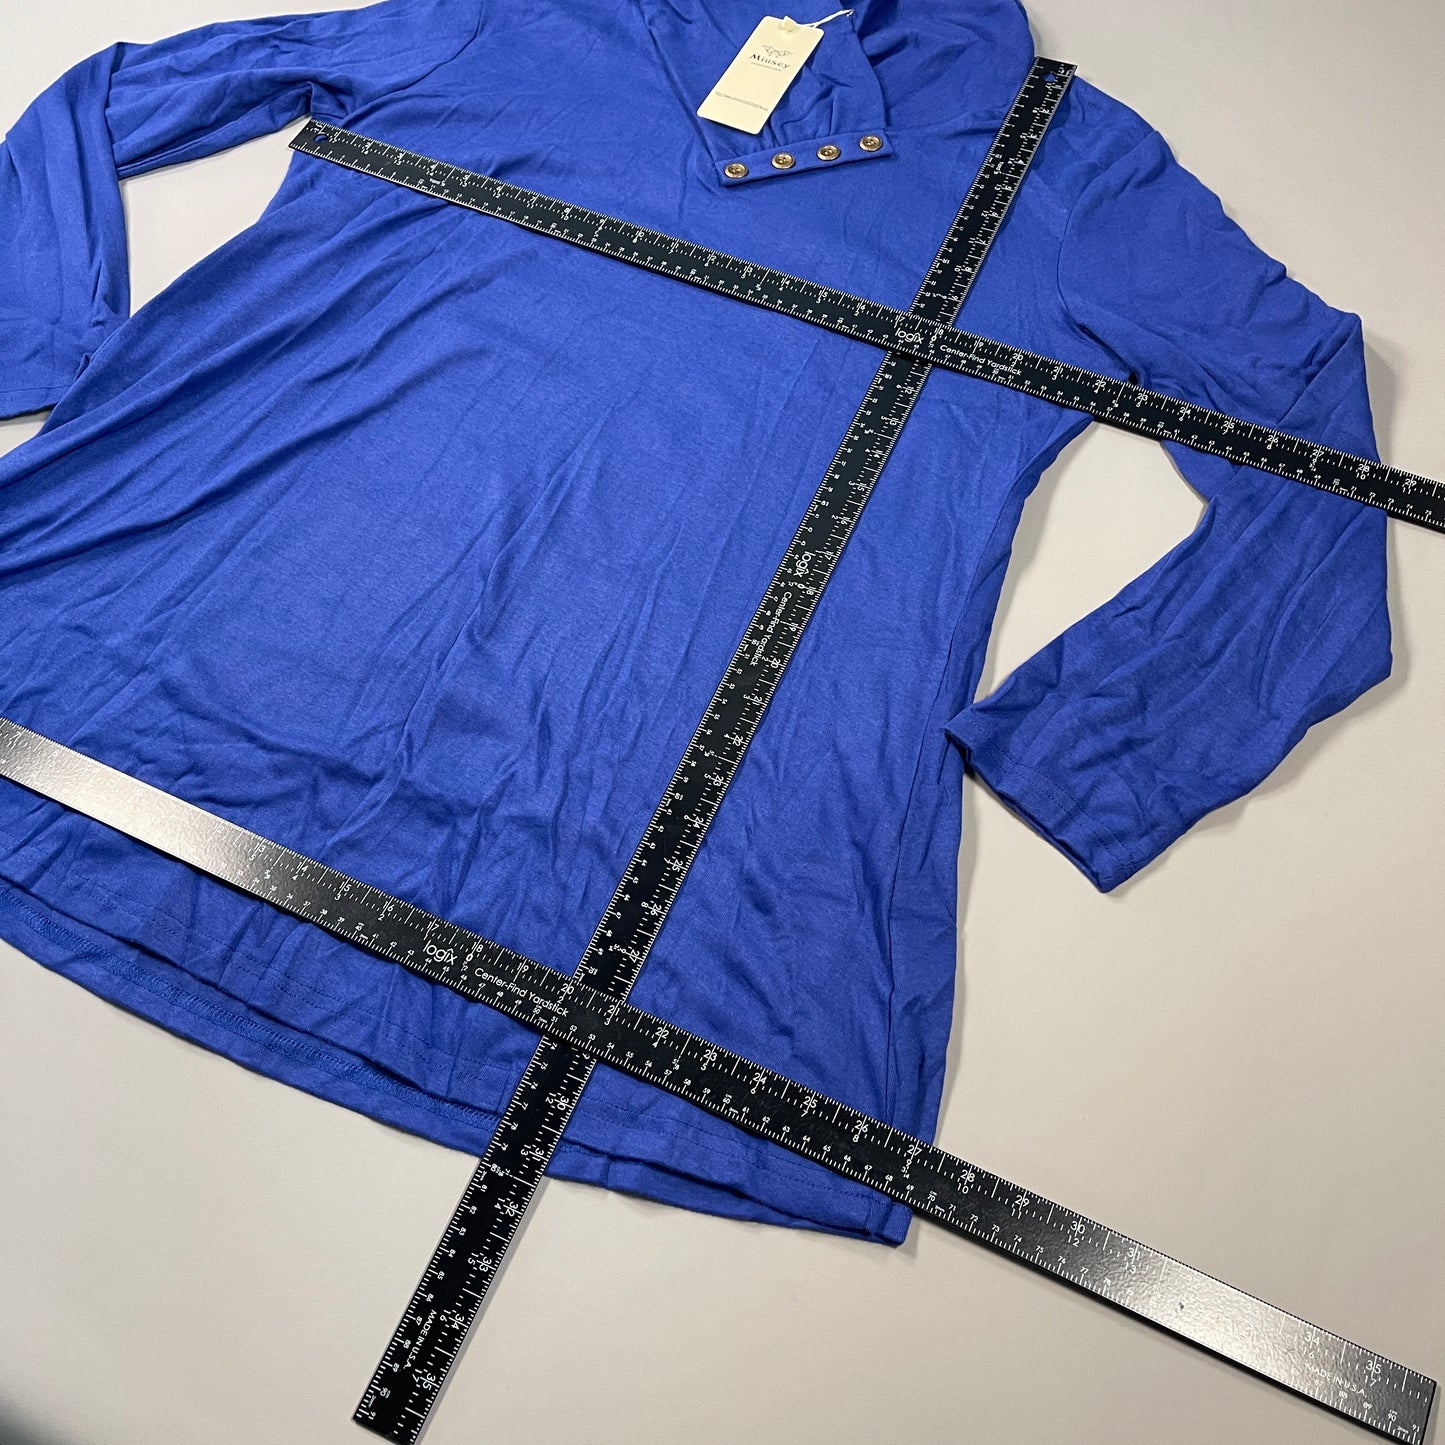 MIUSEY Long Sleeve Cowl Neck Tunic Top Blouse Women's Sz XXXL Blue 20807 (New)